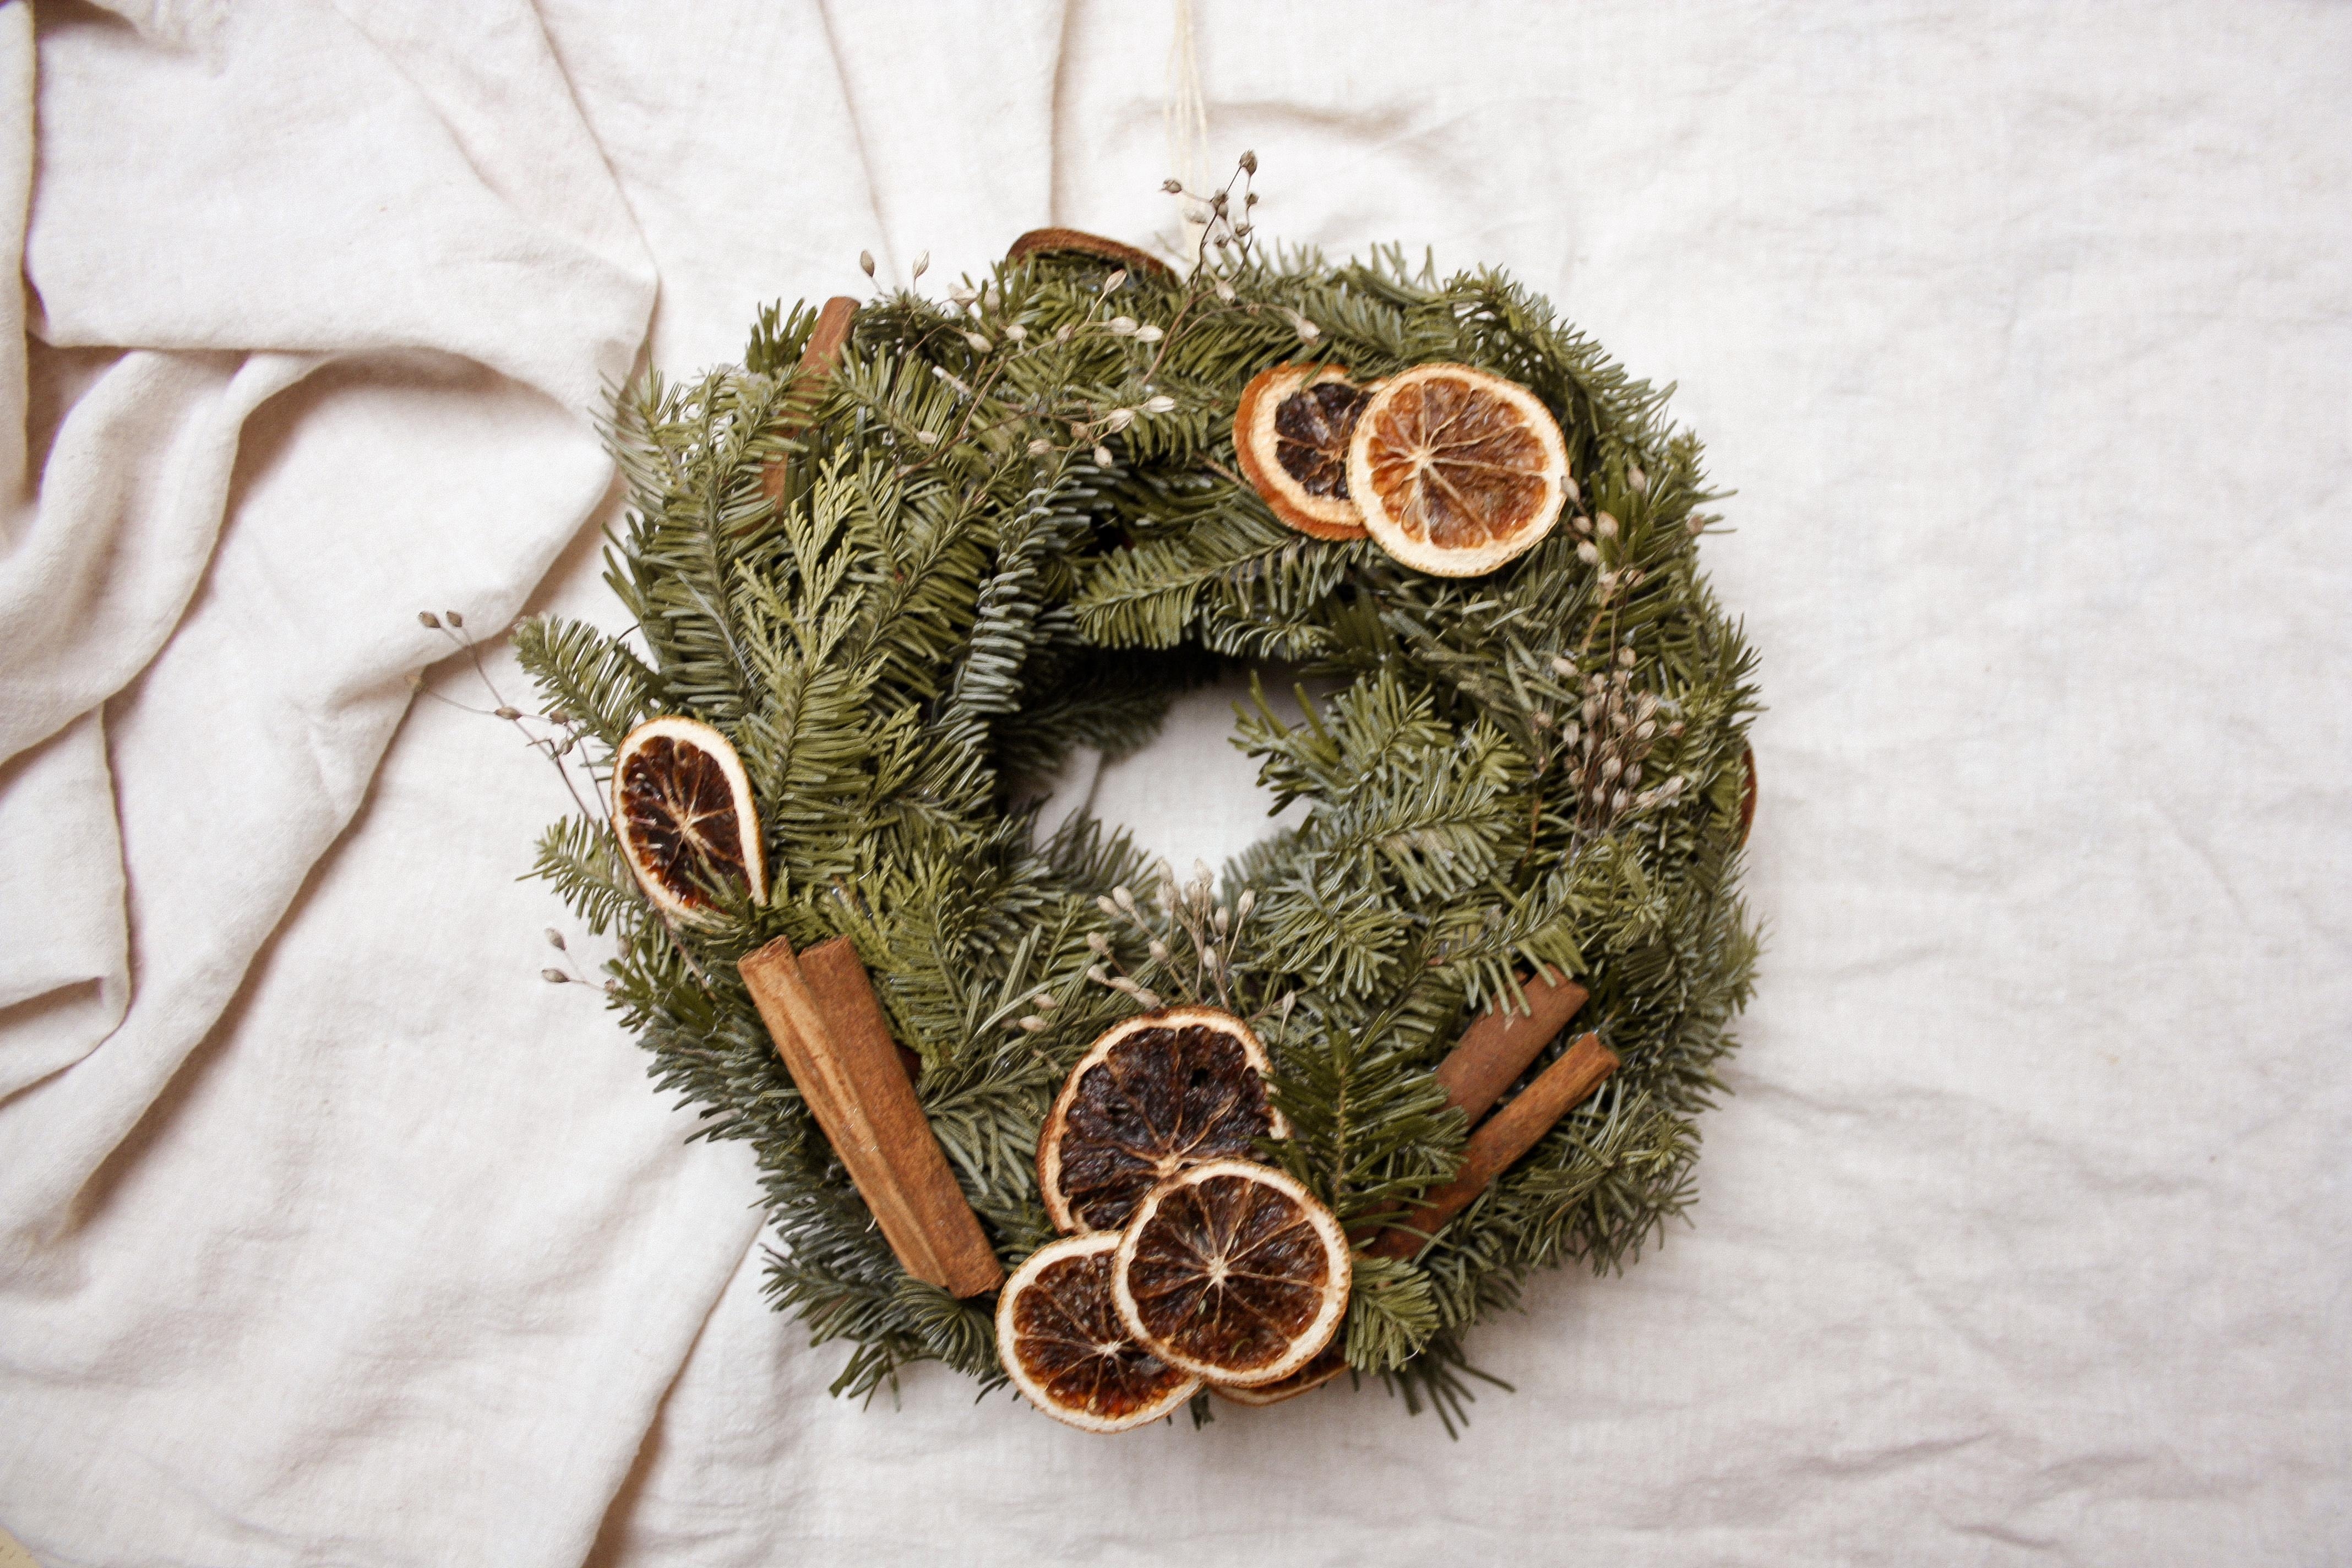 ♡ DIY Christmas wreath ♡
#christmas #christmaswreath #wreath #kranz #diy #kranzliebe #weihnachten 